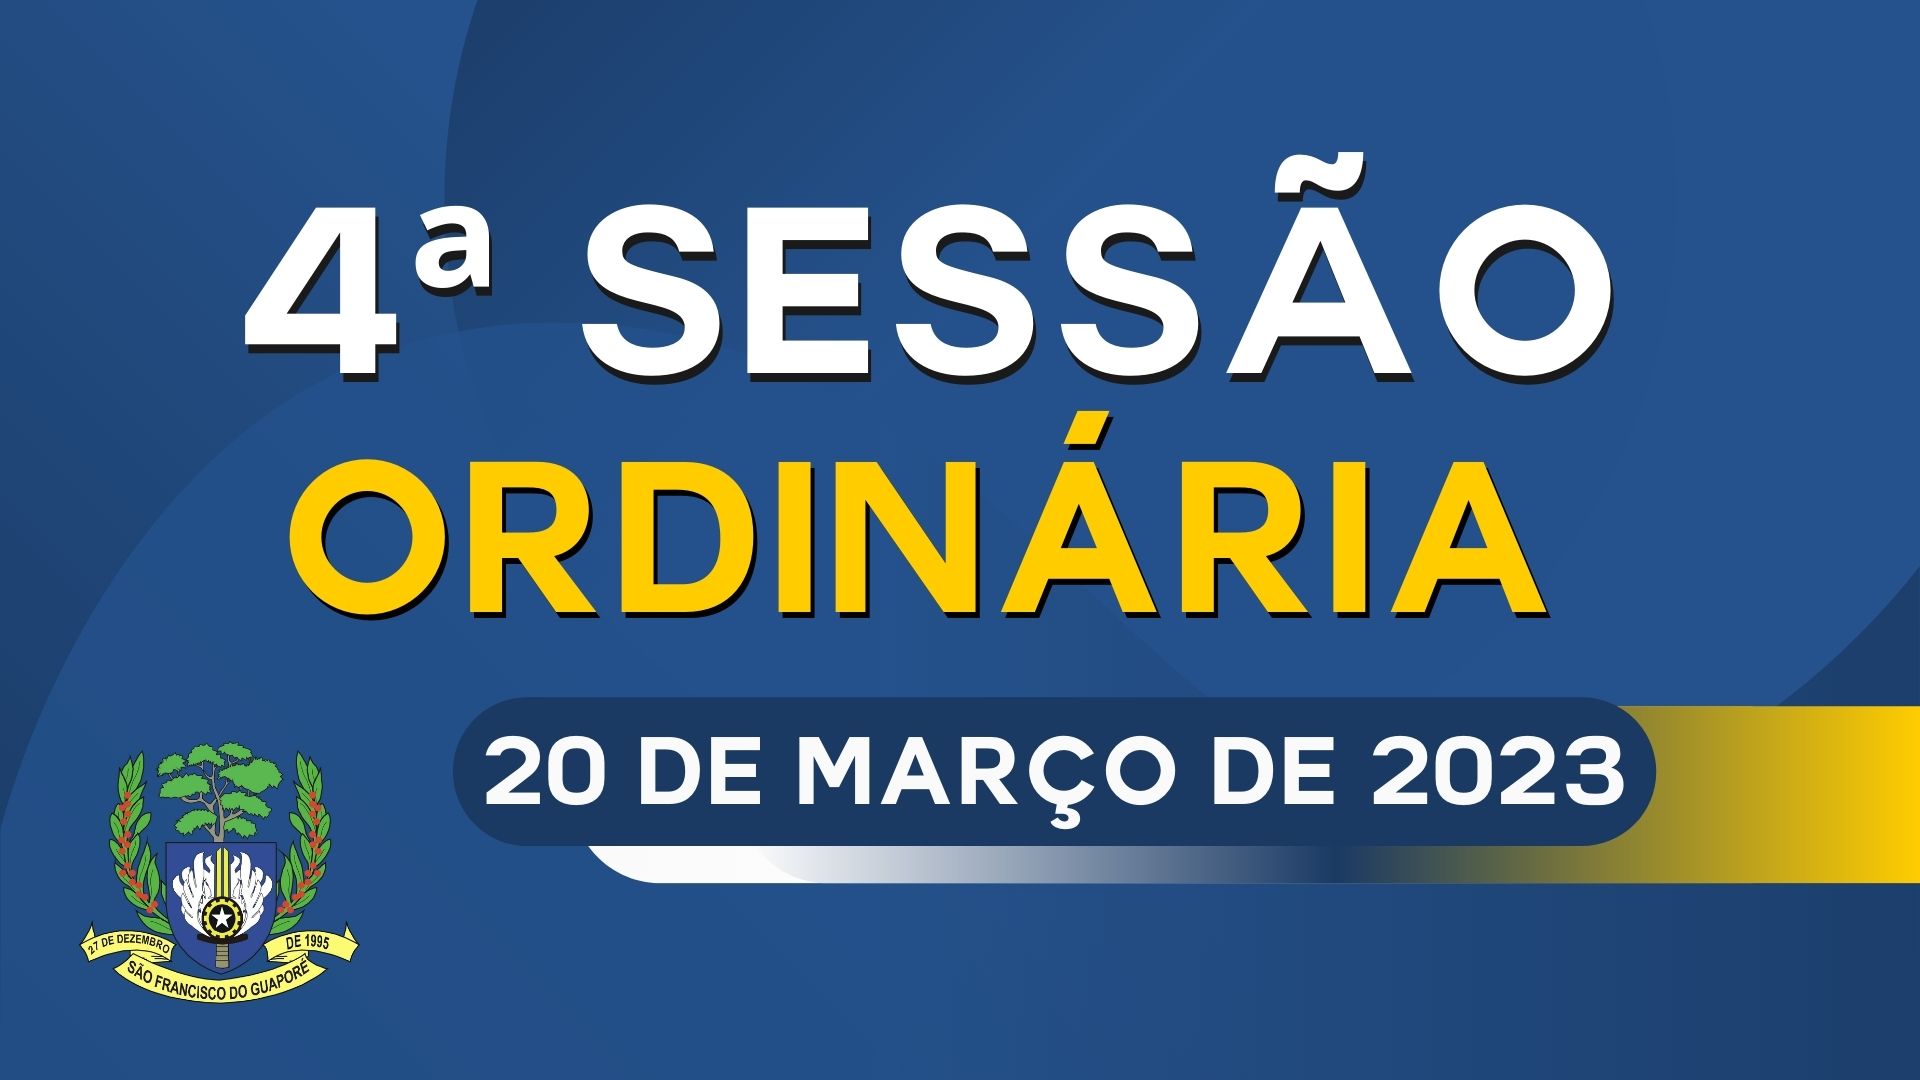 Ordem do Dia da Sessão Ordinária de segunda feira dia 20/03/2023.